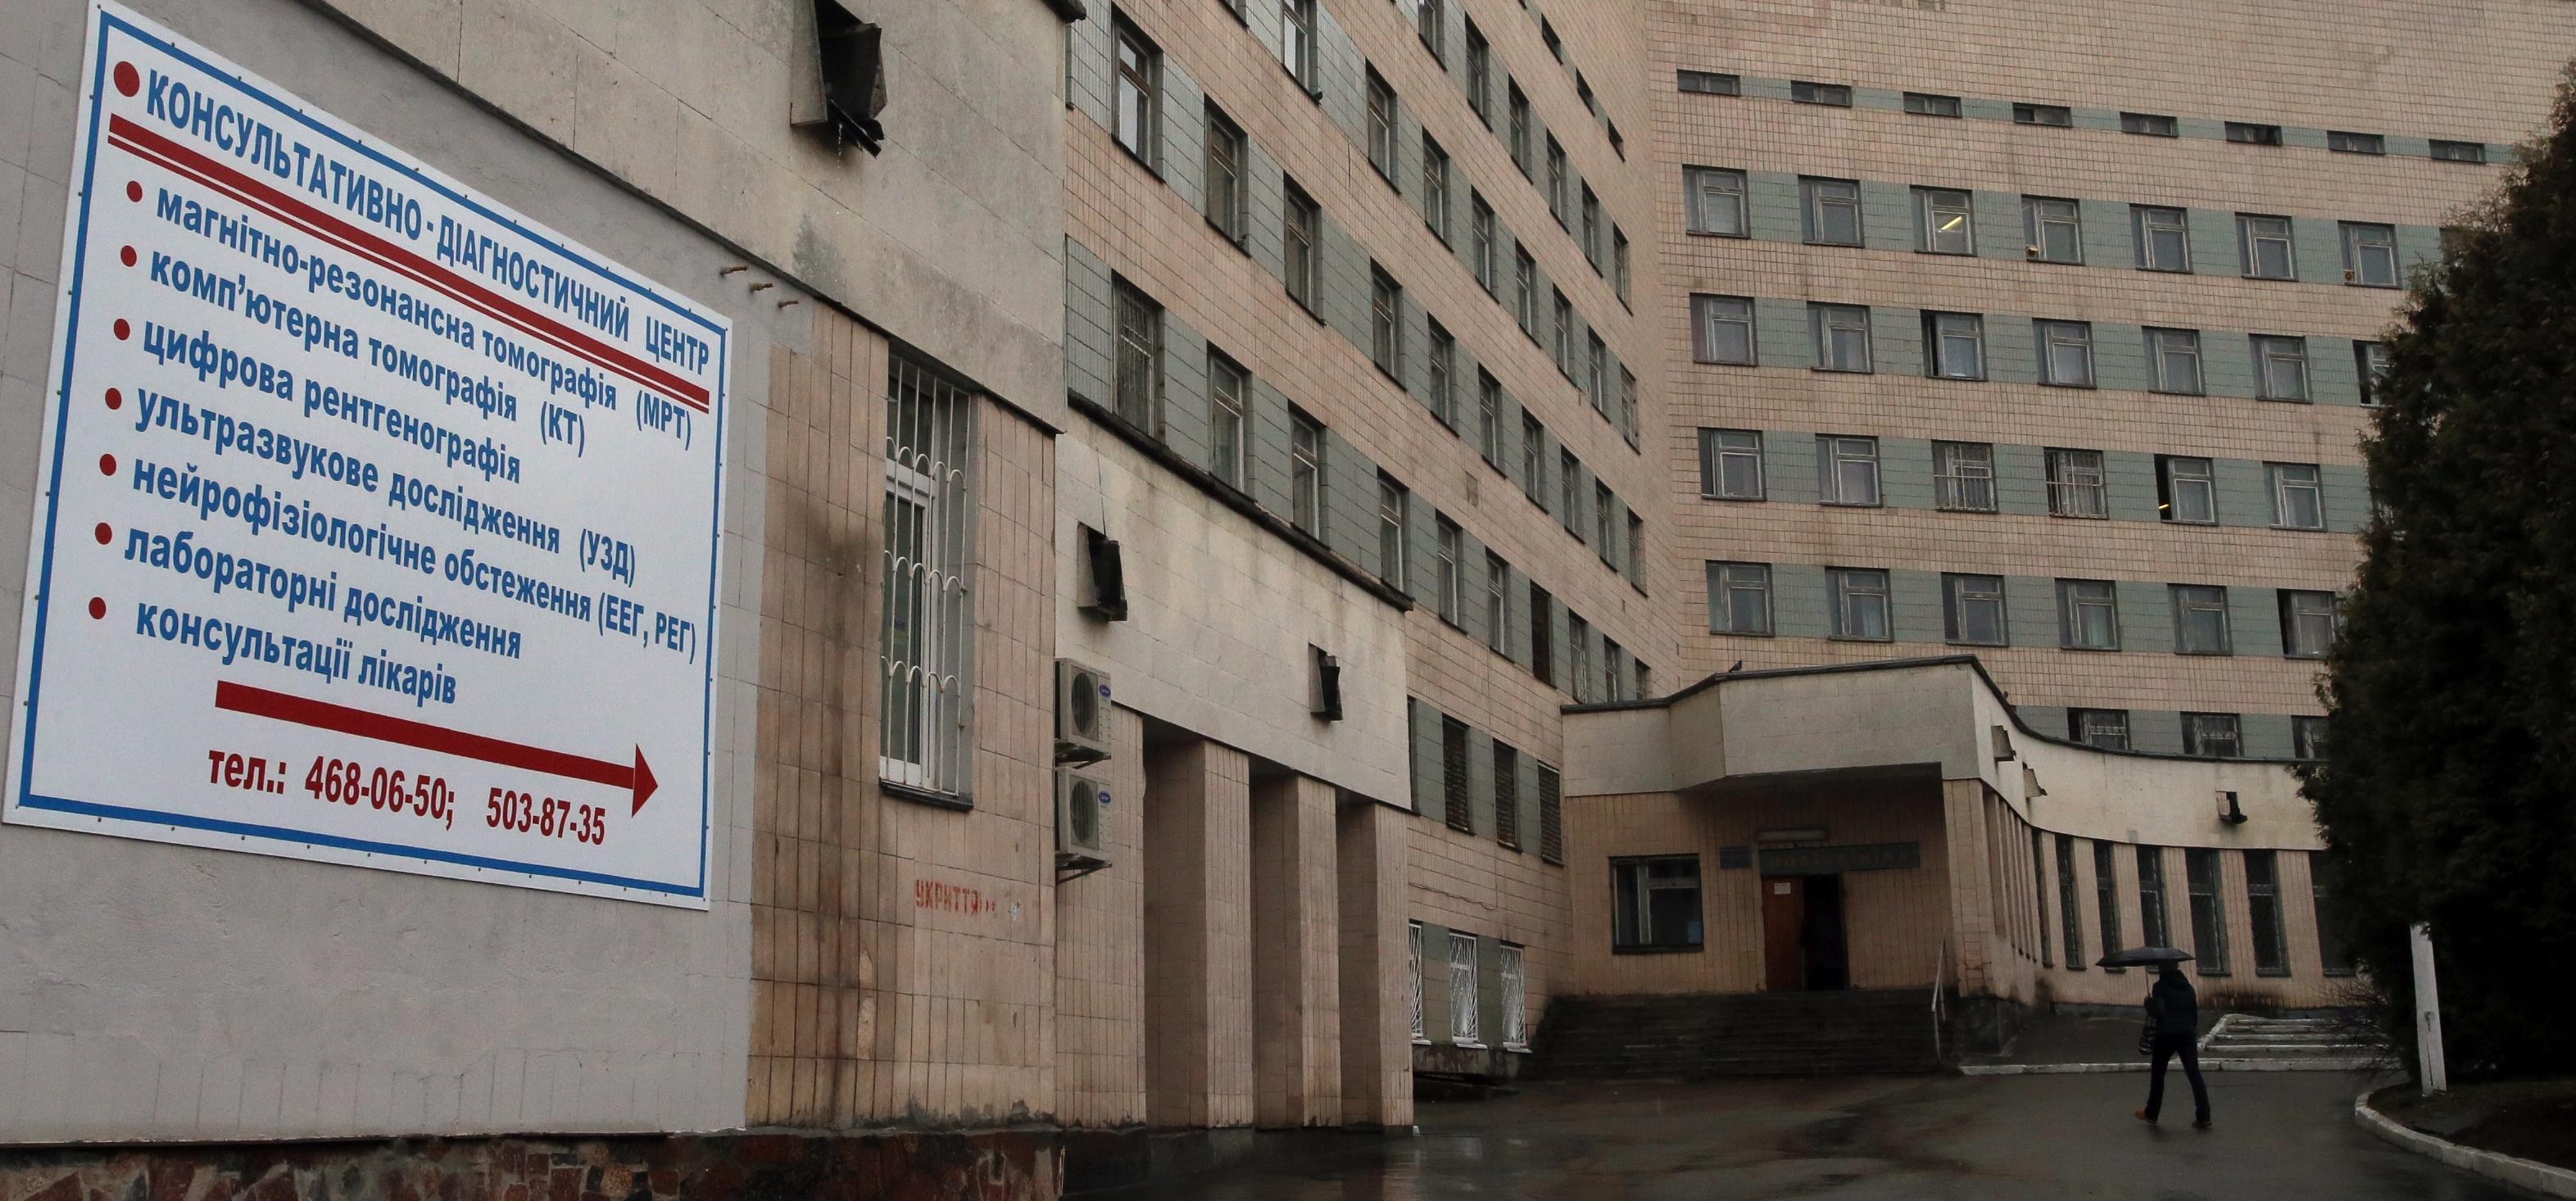 Киевская городская психиатрическая больница №1 имени И. П. Павлова фото